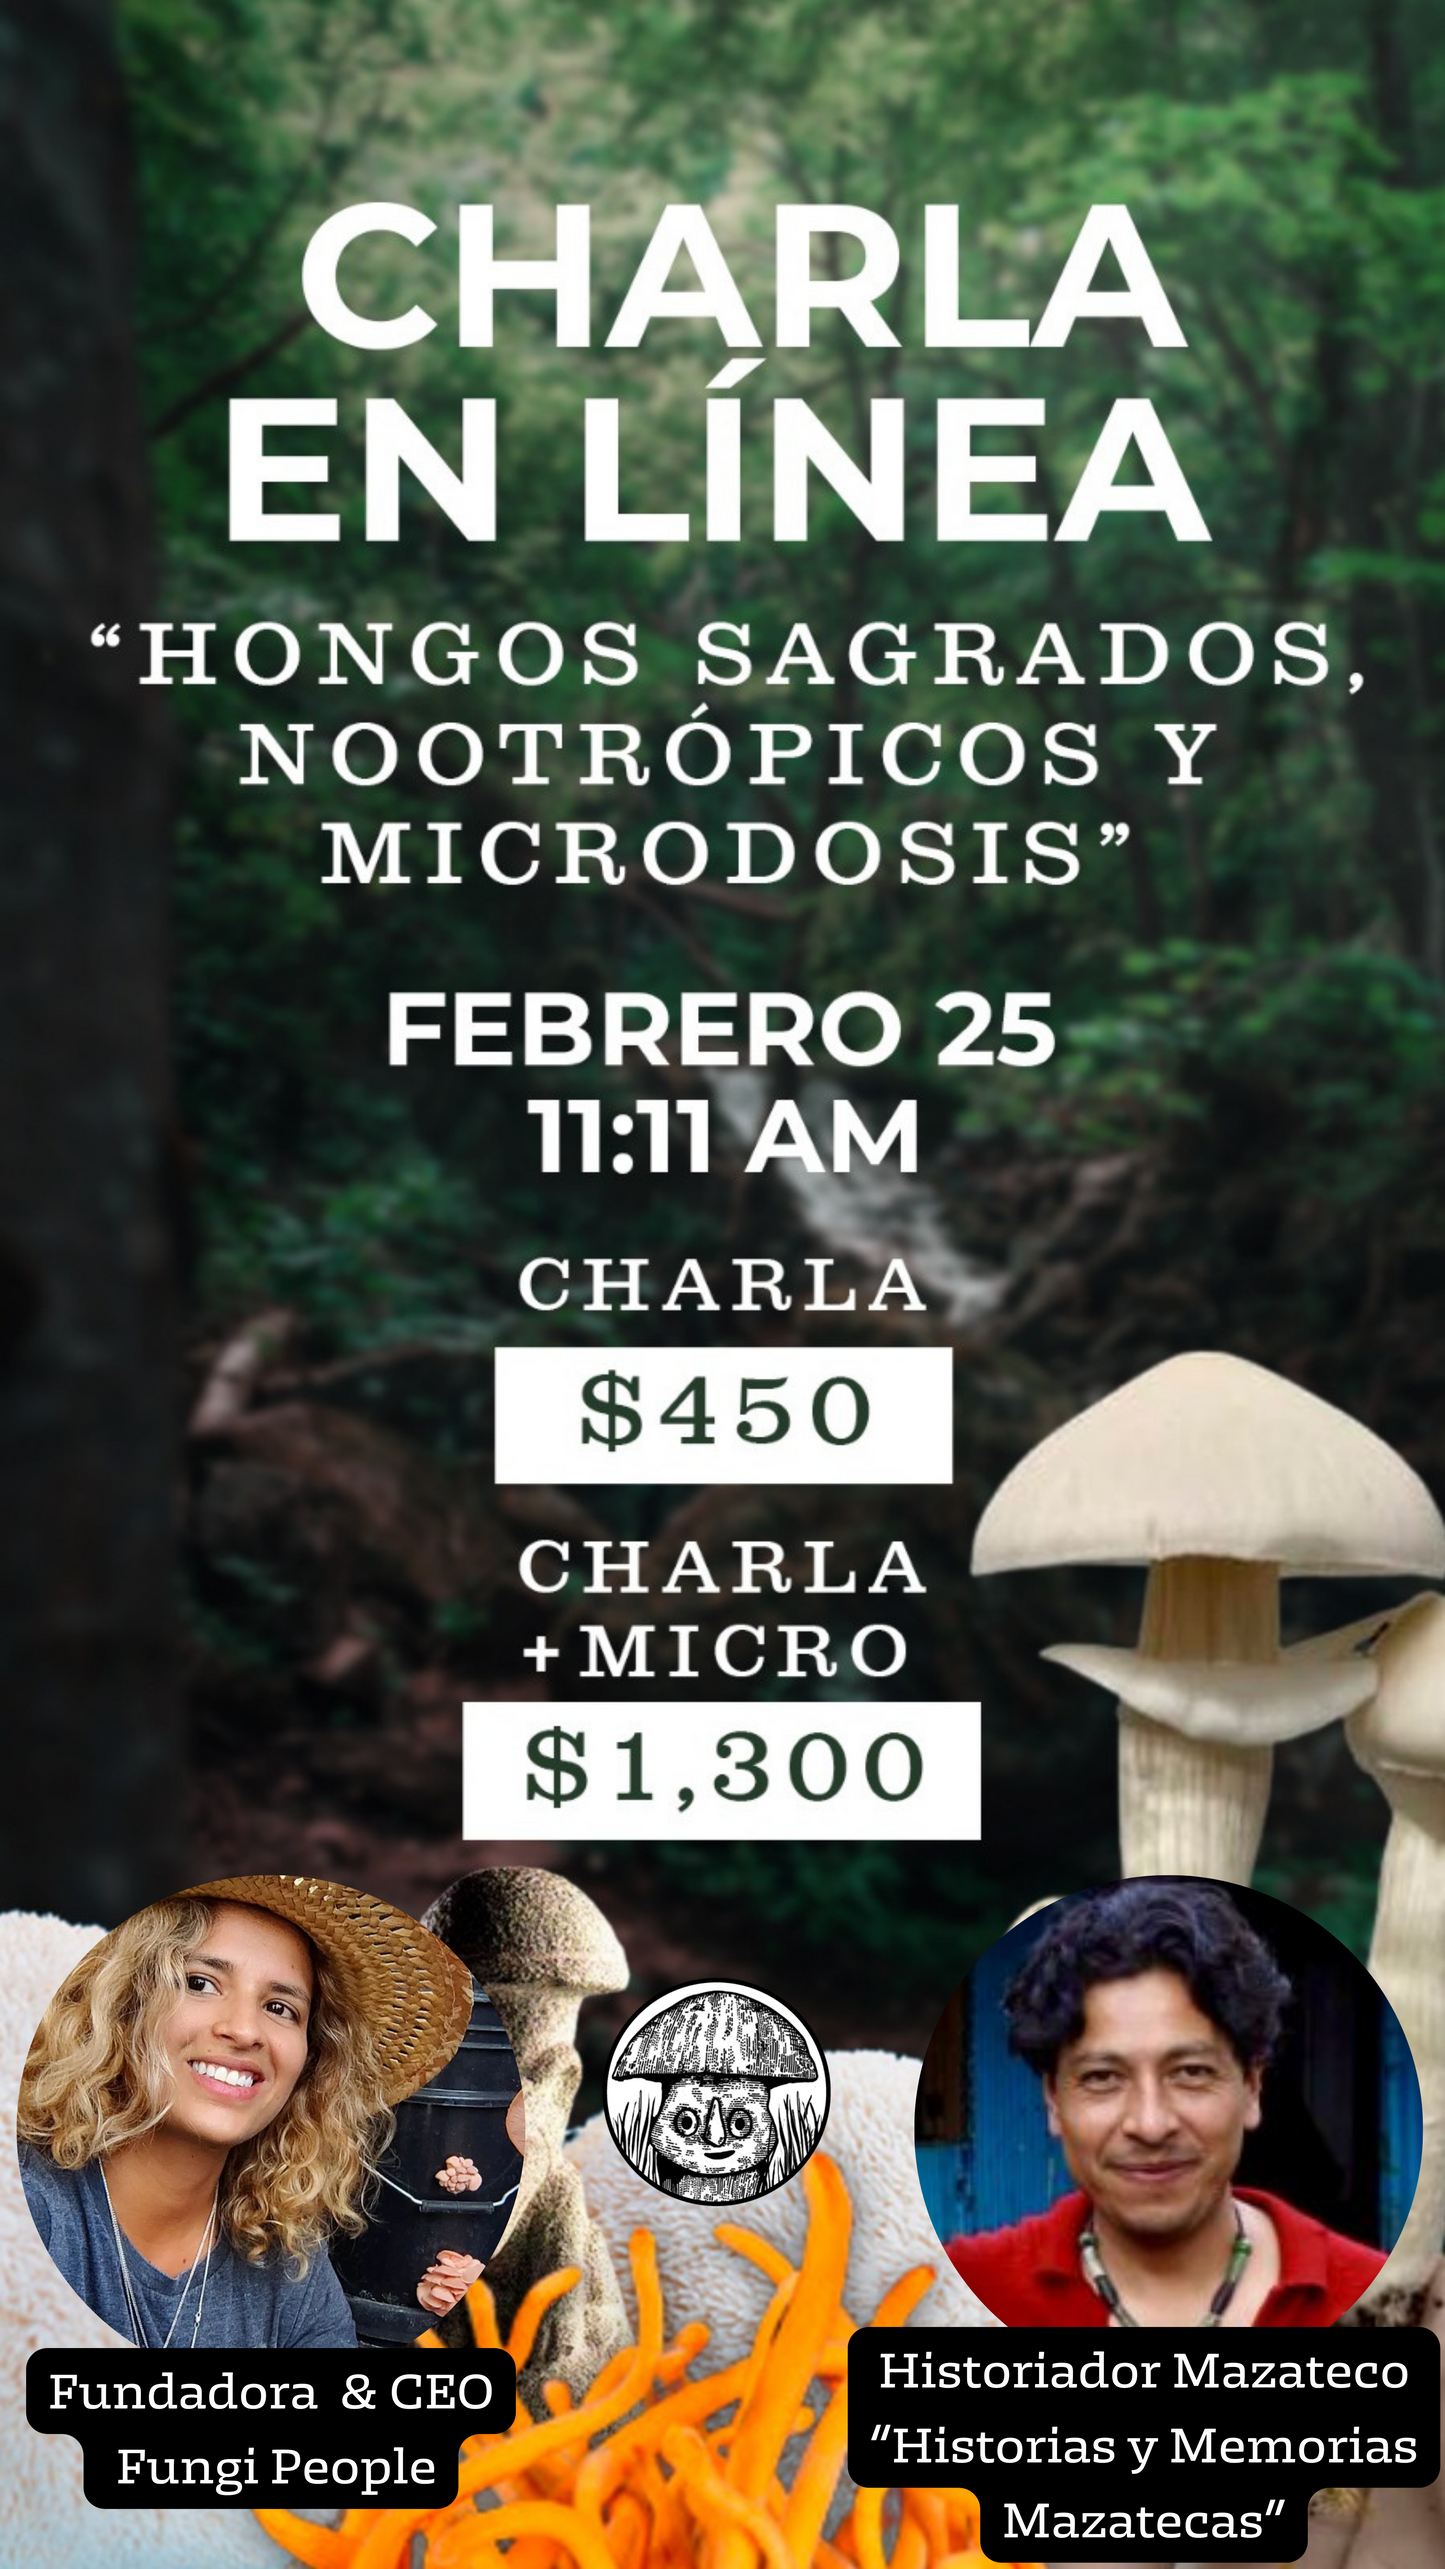 CHARLA EN LINEA "HONGOS SAGRADOS, NOOTROPICOS Y MICRODOSIS"